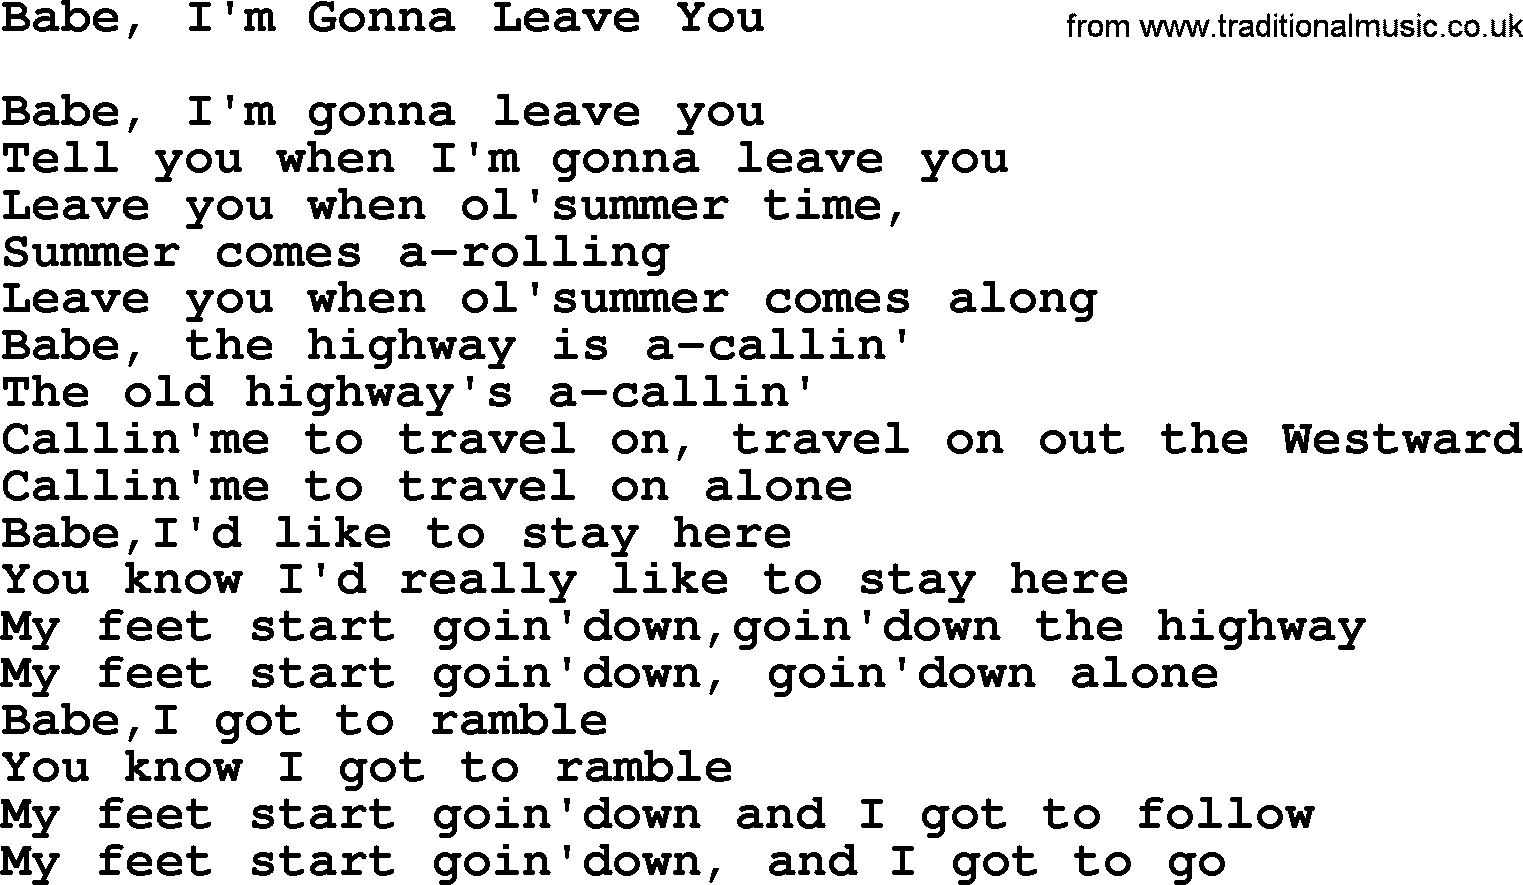 Joan Baez song Babe, I'm Gonna Leave You, lyrics